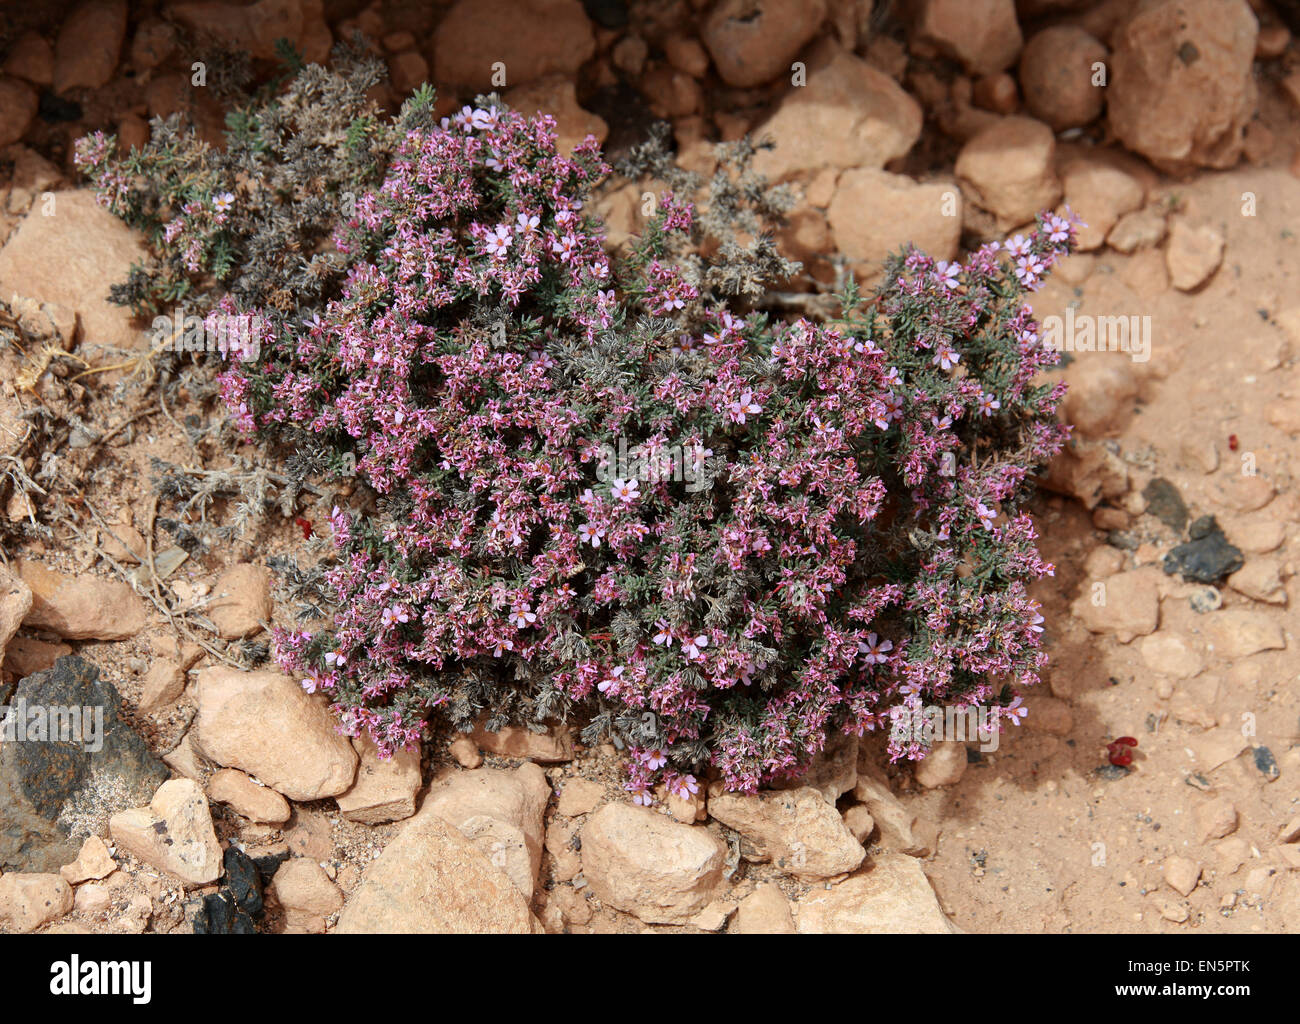 De la mer, Heath, Frankenia laevis Frankeniaceae. Fuerteventura, Îles Canaries, Espagne. Rare au Royaume-Uni. Banque D'Images